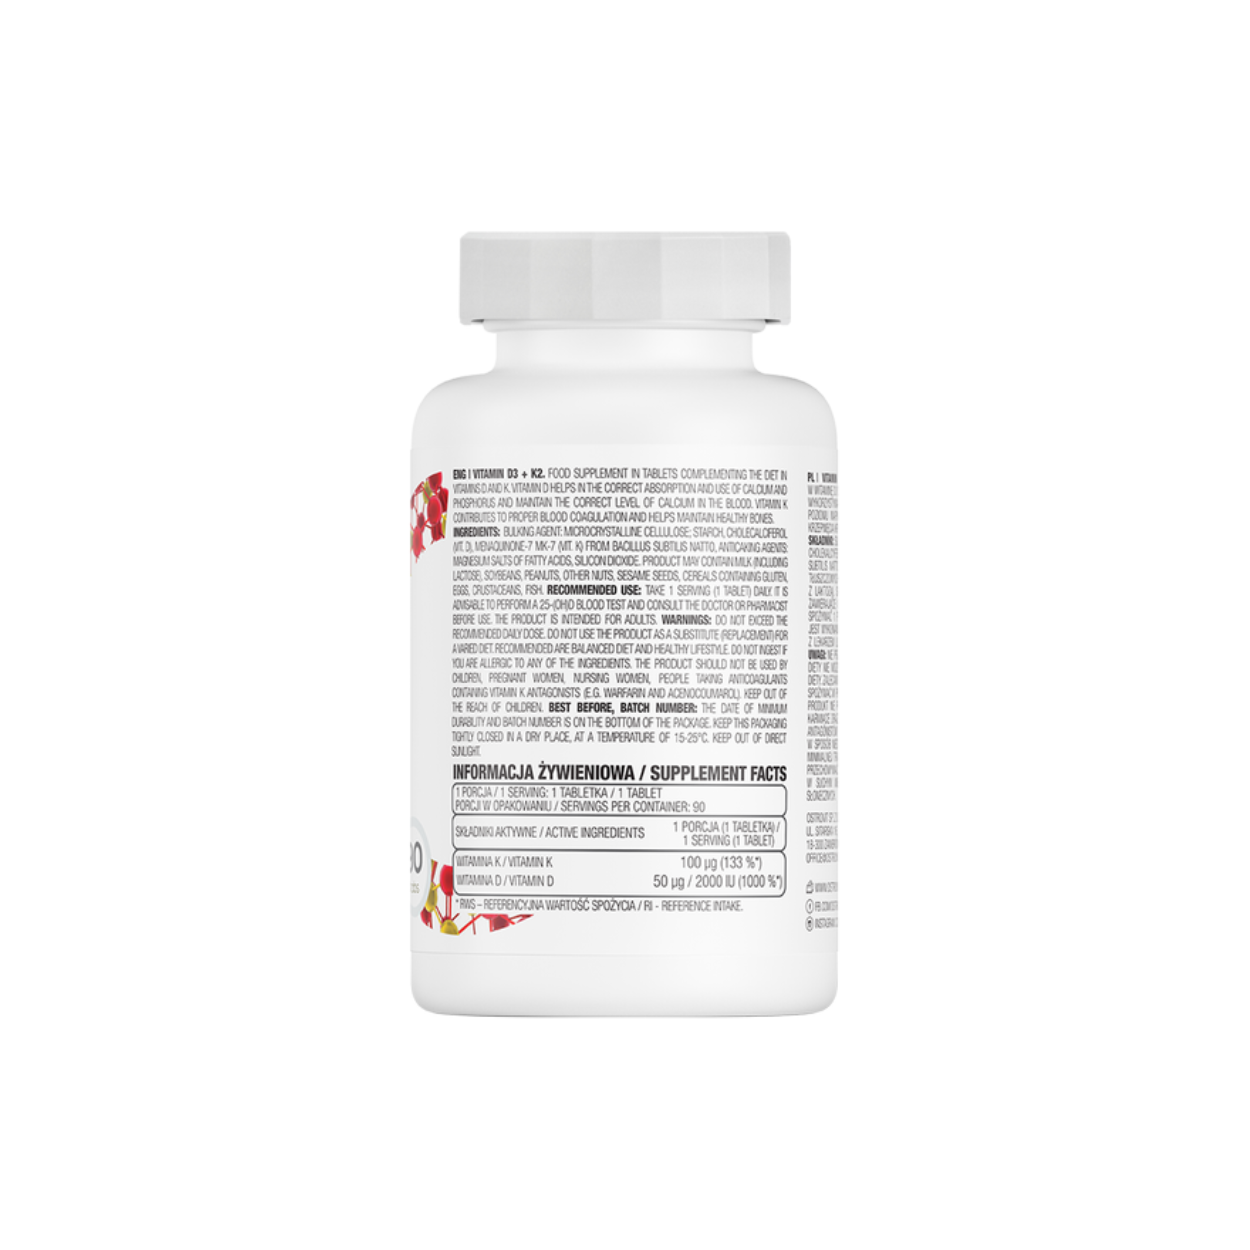 OstroVit Vitamin D3+K2 (90 Tabletten)